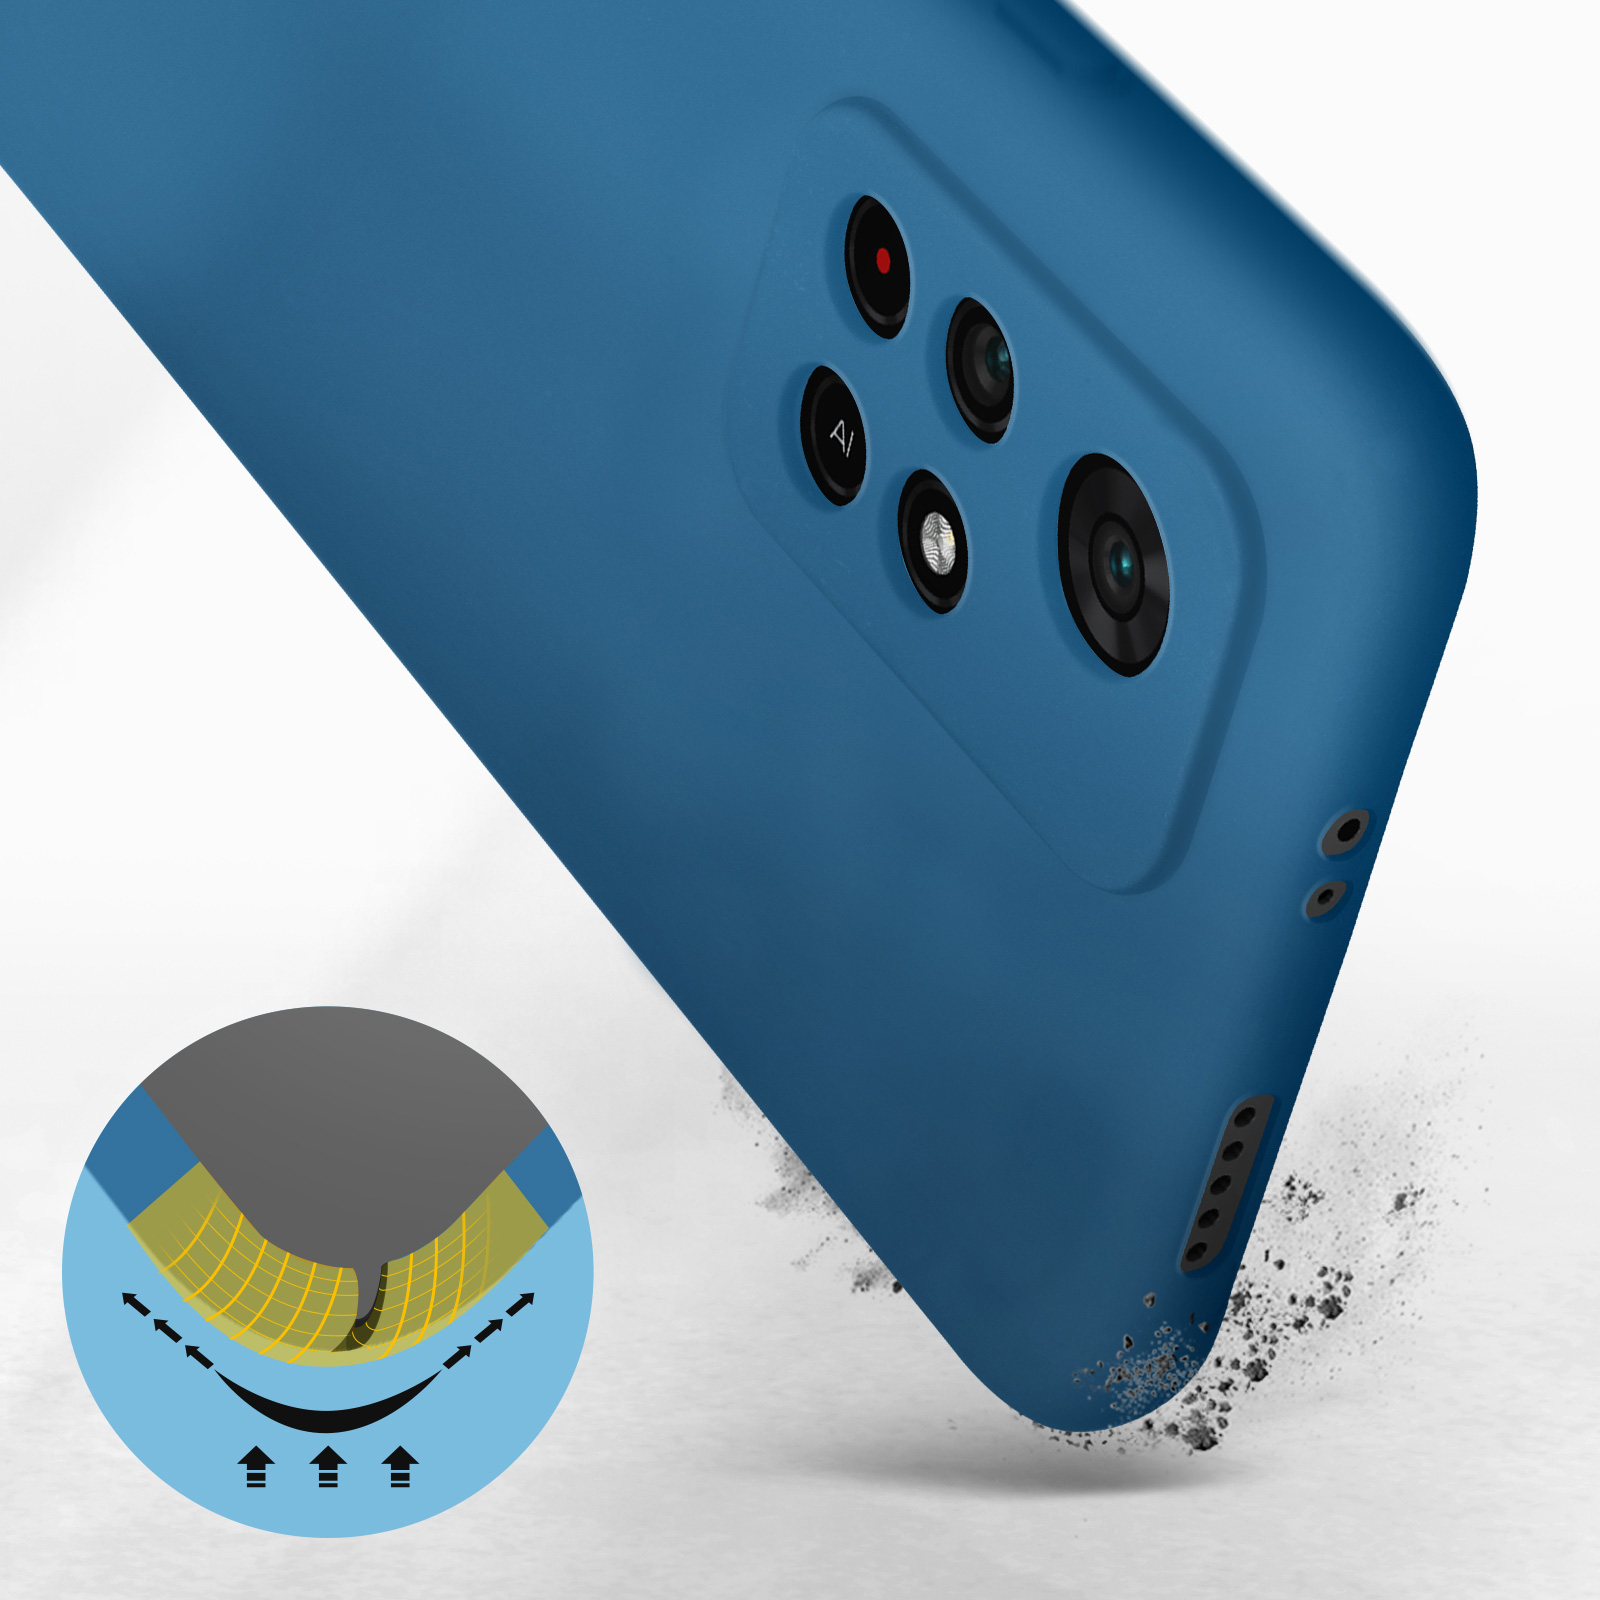 Funda Carcasa Azul silicona Xiaomi Redmi Note 8